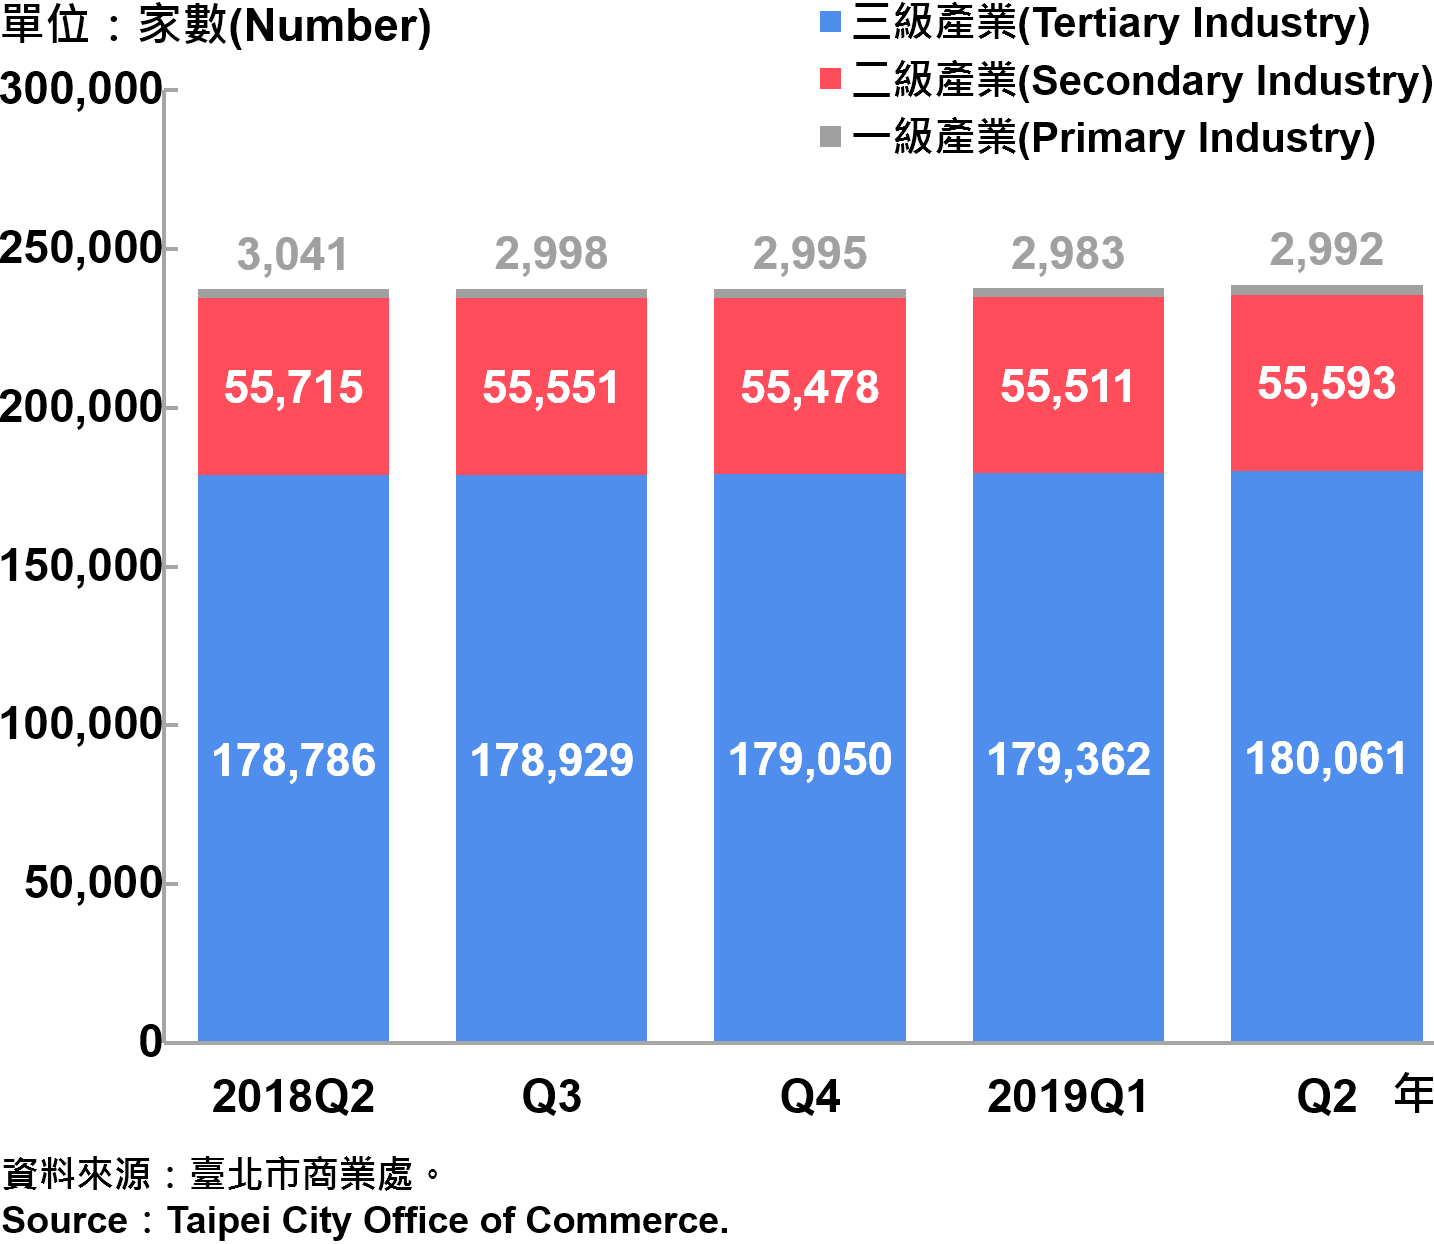 臺北市一二三級產業登記家數—2019Q2 Number of Primary , Secondary and Tertiary Industry in Taipei City—2019Q2